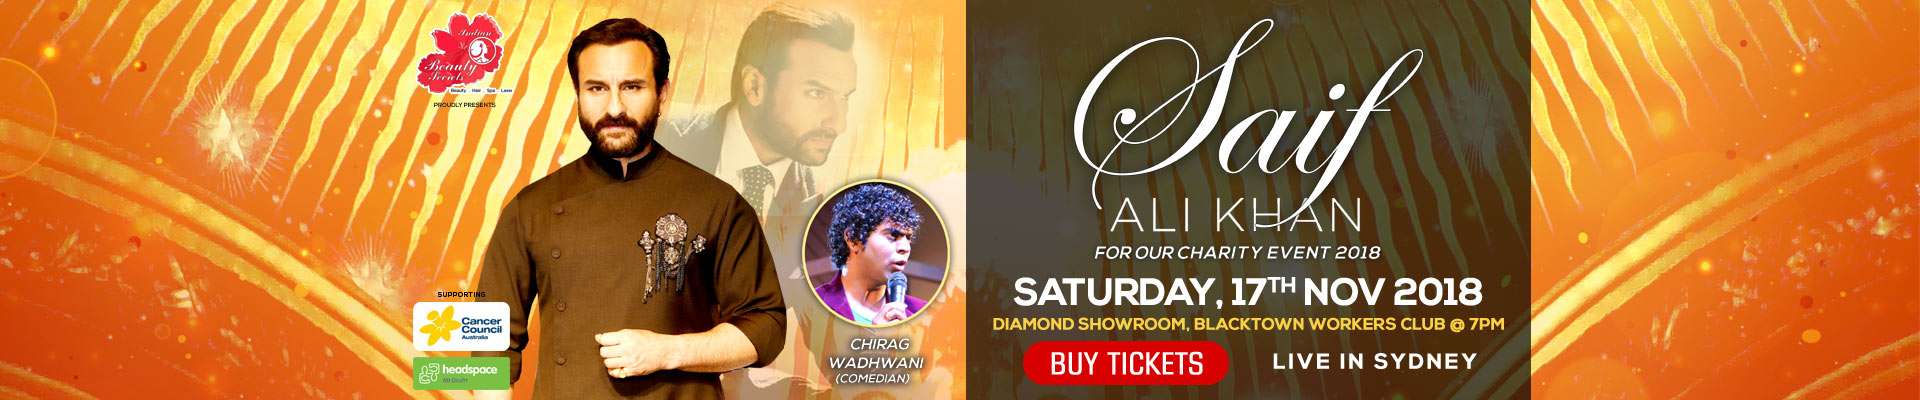 Saif Ali Khan - Charity Event 2018